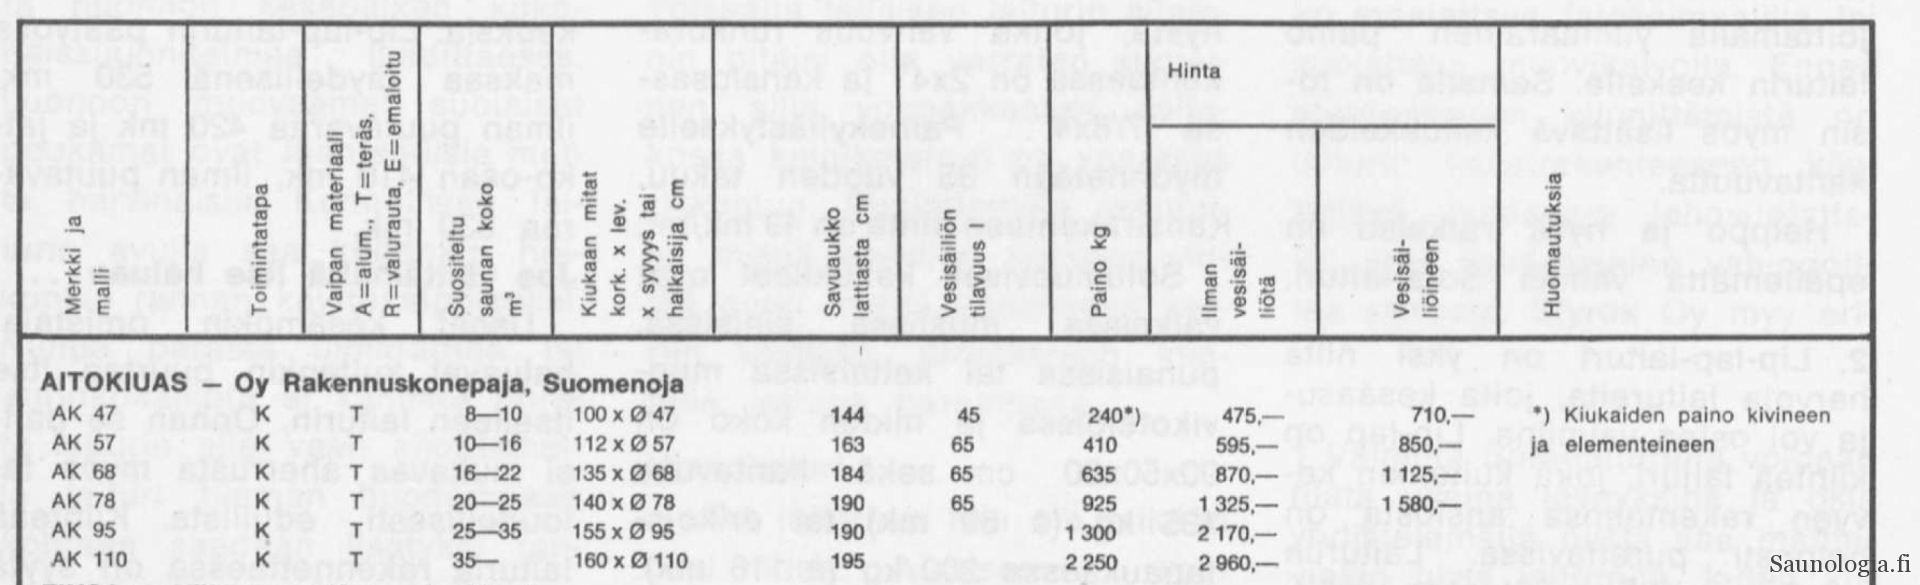 1972-Aitokiuas-tekniset-tiedot-hinta